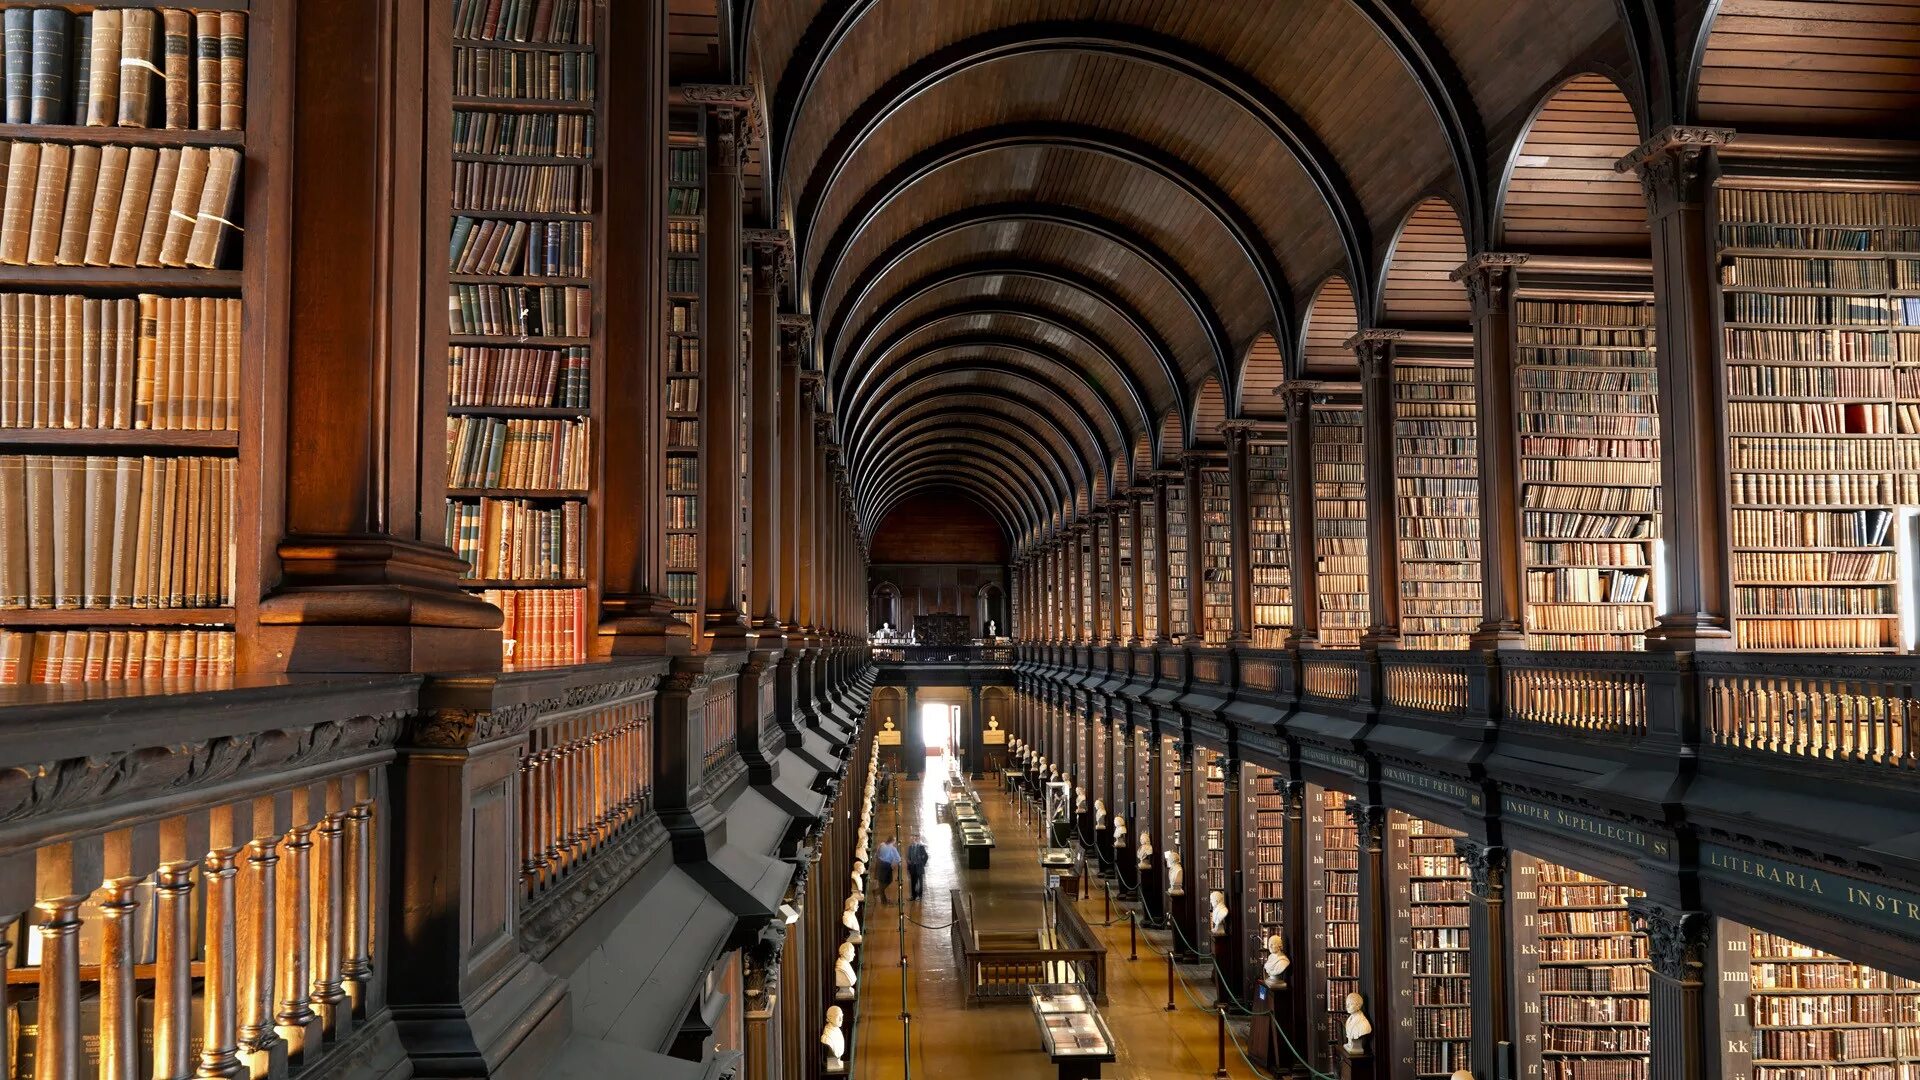 Библиотека 7 букв. Библиотека Тринити-колледжа в Дублине. Библиотека Тринити-колледжа, Дублин, Ирландия. Тринити-колледж в Дублине, Ирландия. Библиотека Тринити-колледжа в Кембридже.